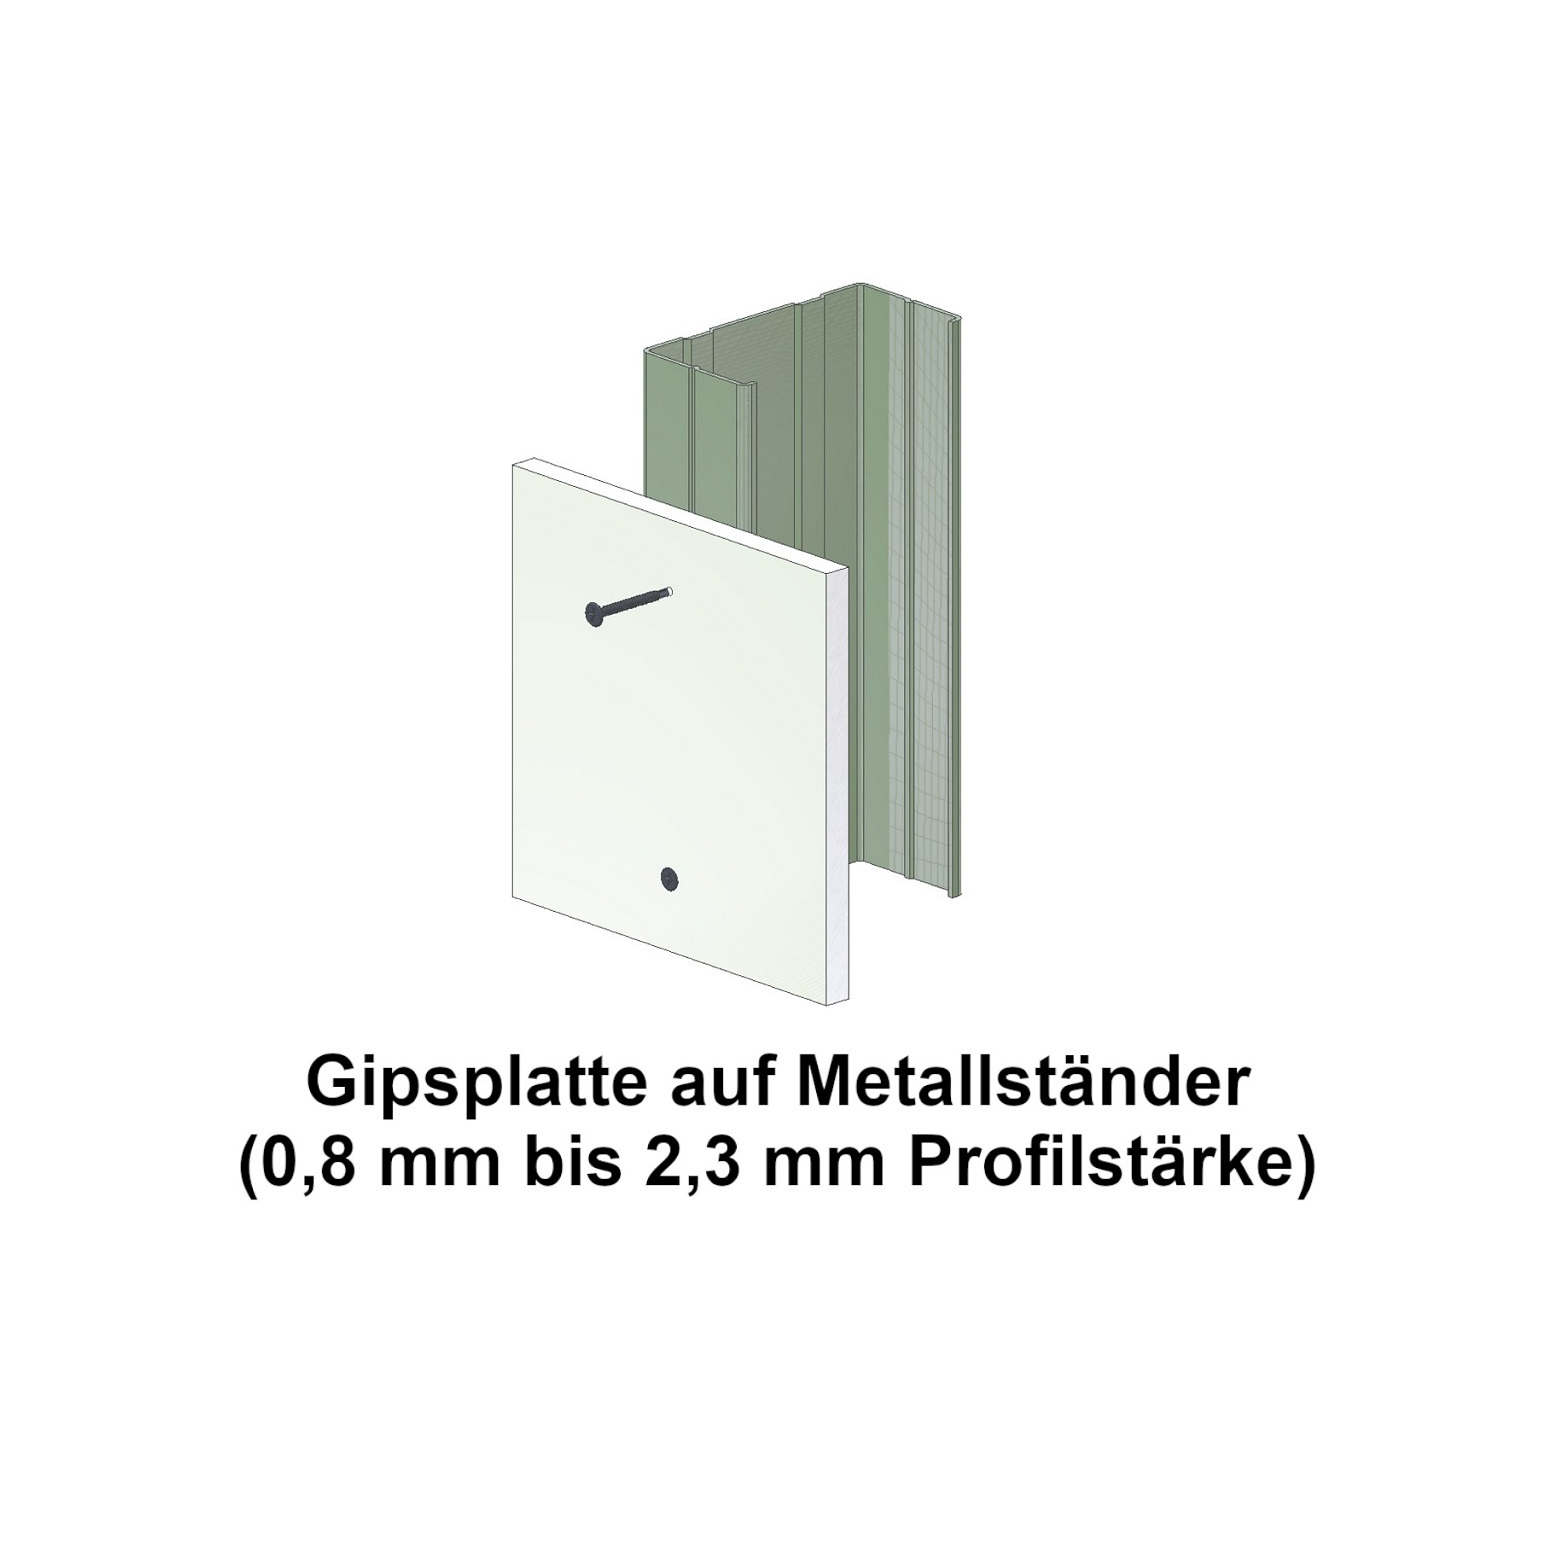 BLUEfast500® Schnellbauschrauben | Bohrspitze | 3,5x35 | 1.000 Stk